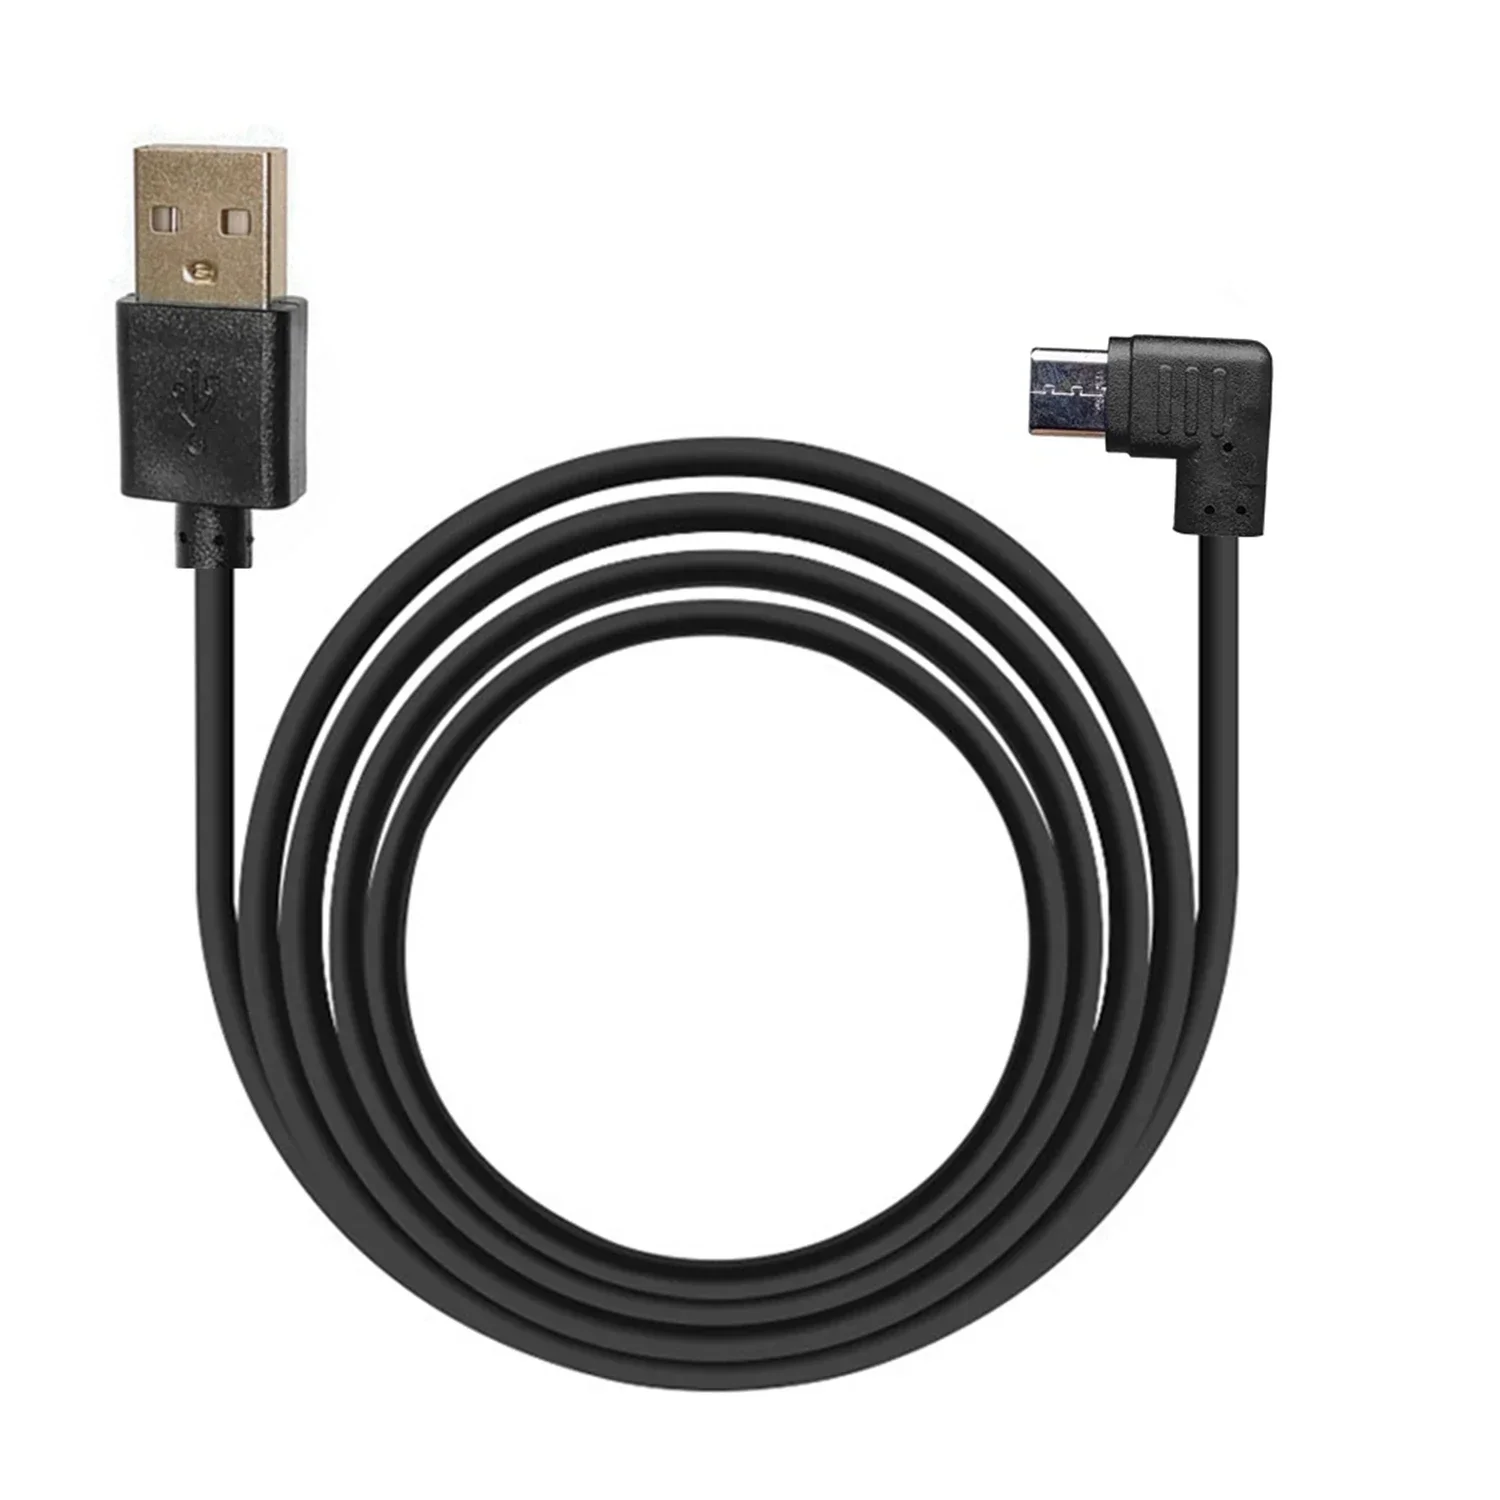 100 ШТ C-type address USB 2.0 двойной кабель для передачи данных, кабель для зарядки автомобильного телефона, угол 90 градусов, слева и справа, 25 см, 50 см, 100 см